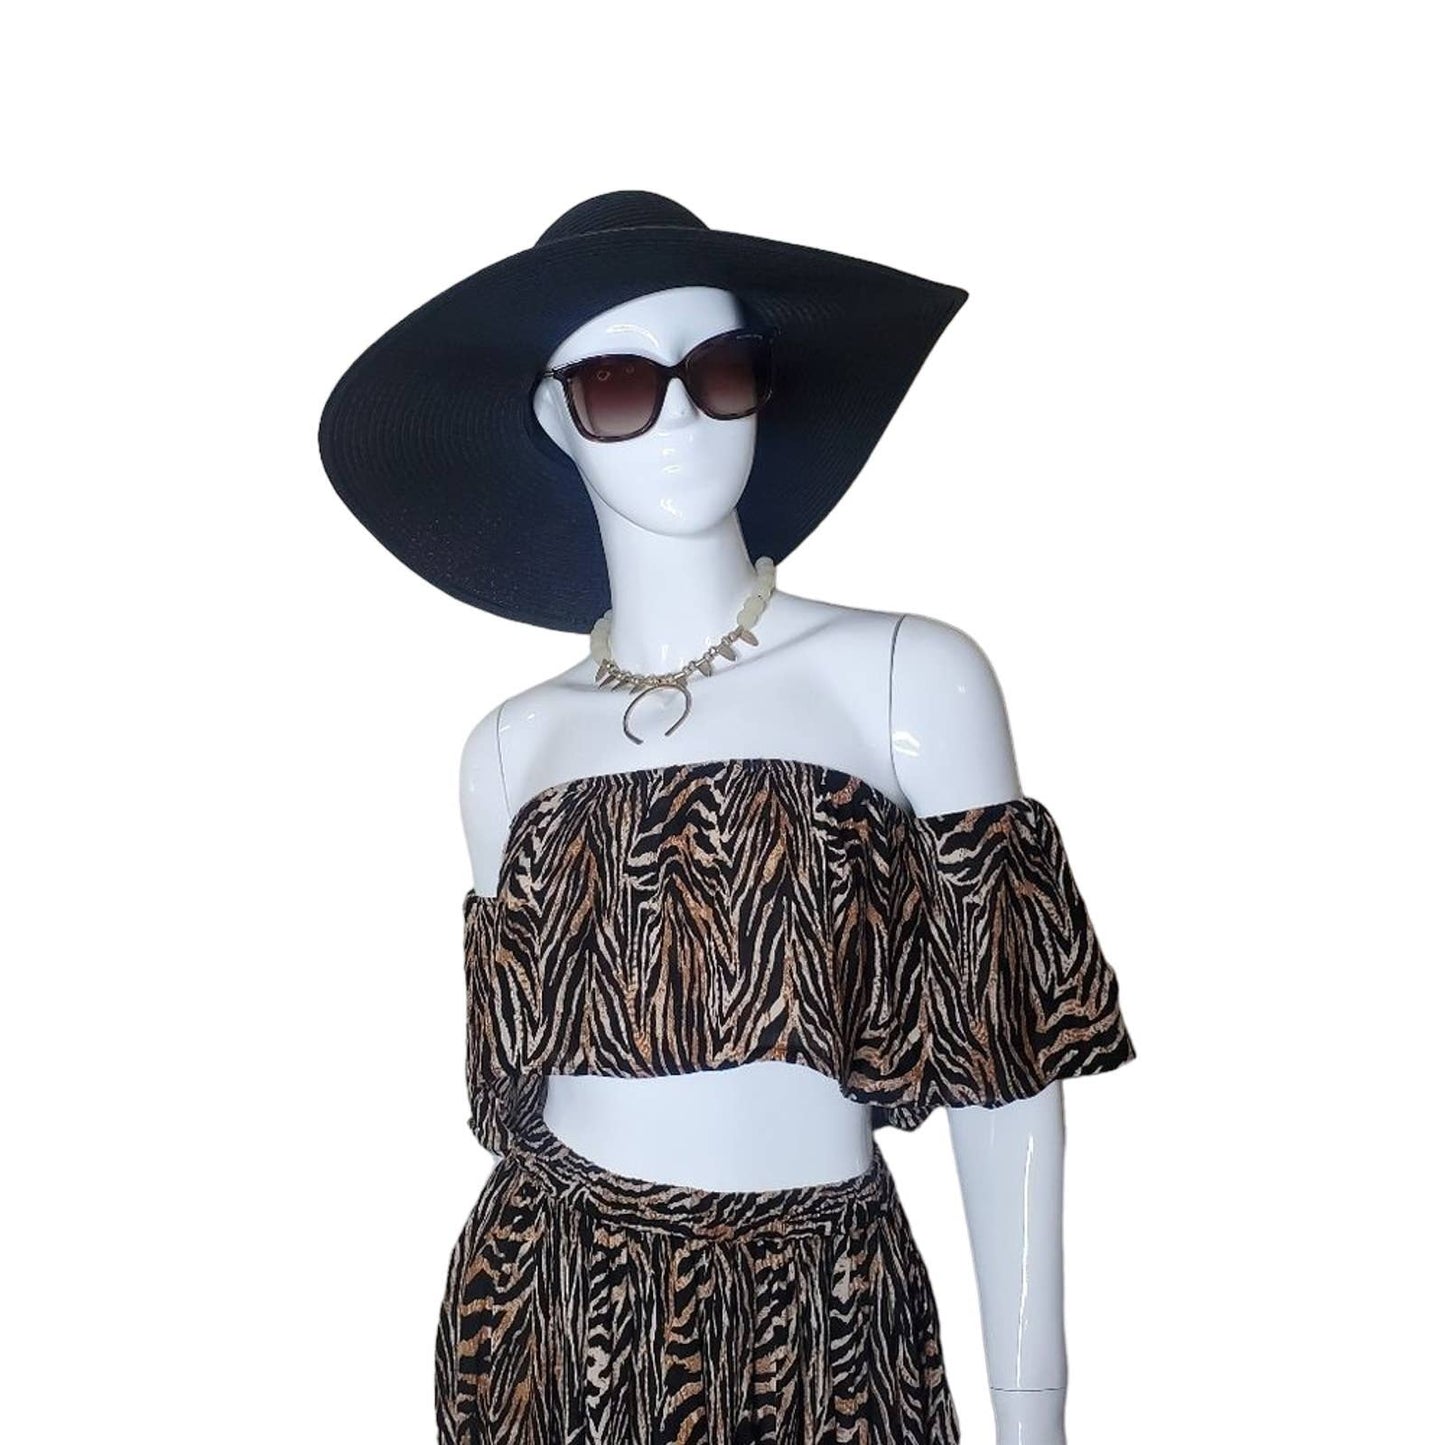 ASOS Tiger Print Skirt & Ruffle Crop Top Set, Size 2